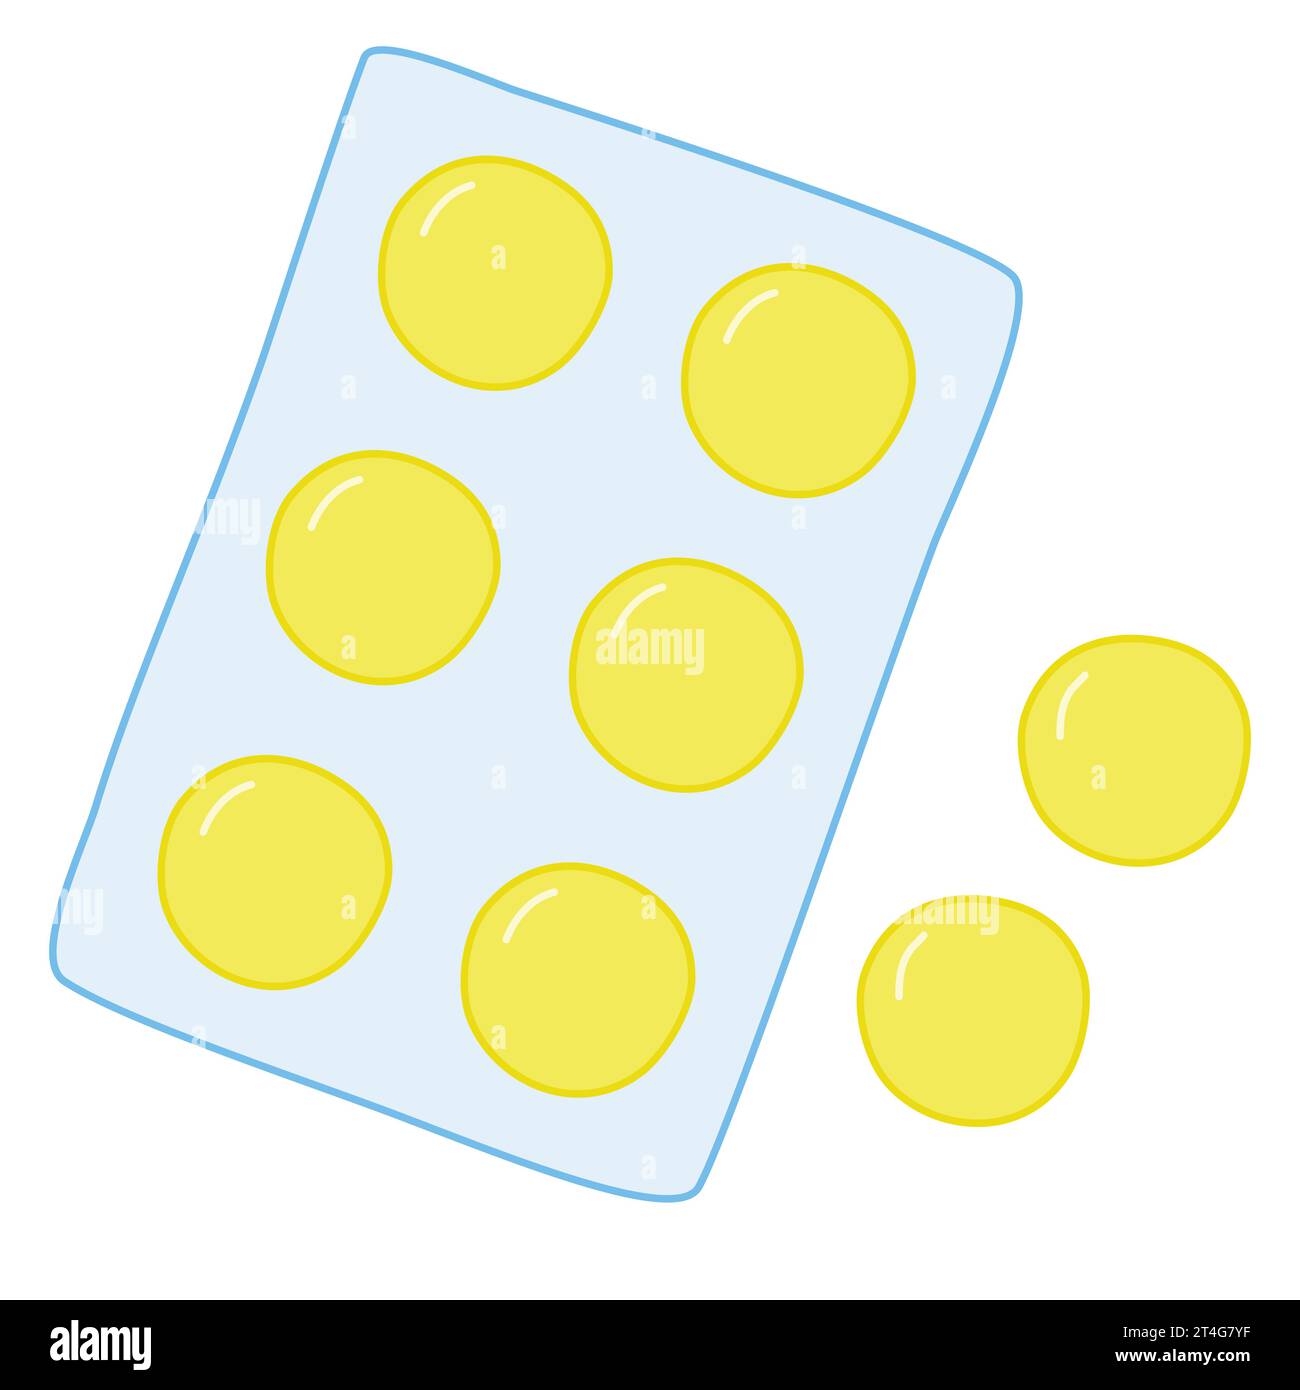 Große runde gelbe Tabletten, Lutschtabletten oder Pillen in Blisterpackung, Erkältung und Grippe oder Halsschmerzen Behandlung, Vektorillustration Stock Vektor